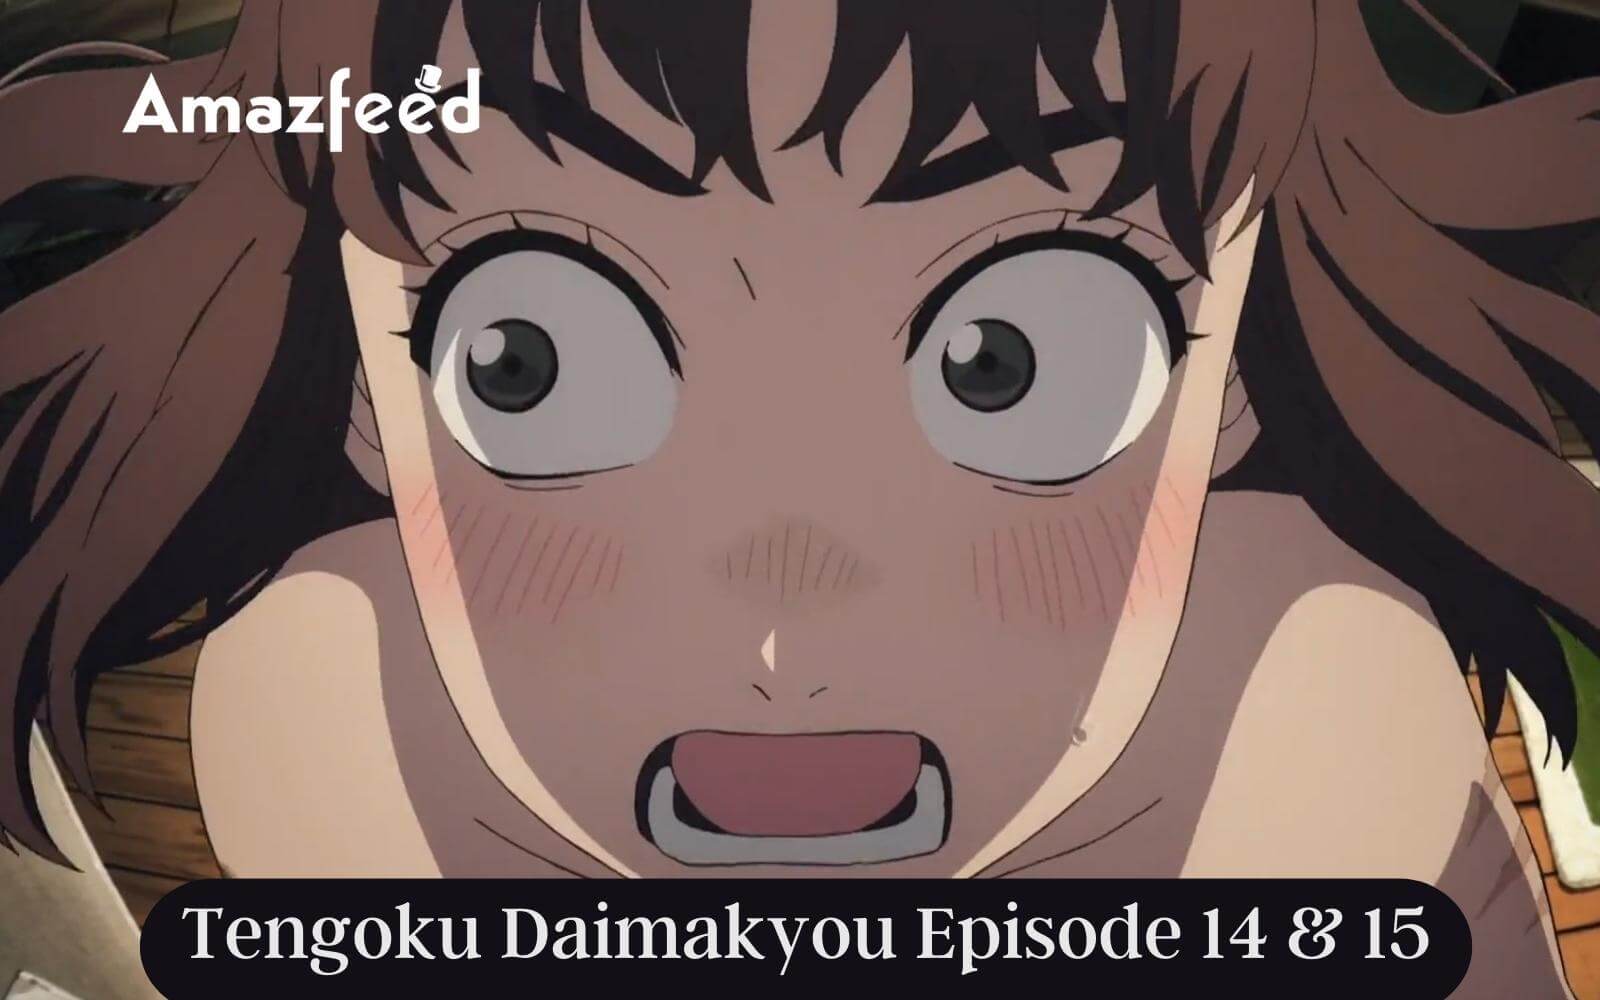 Tengoku Daimakyou Episode 14 & 15 Release Date, Last Episode Recap Update